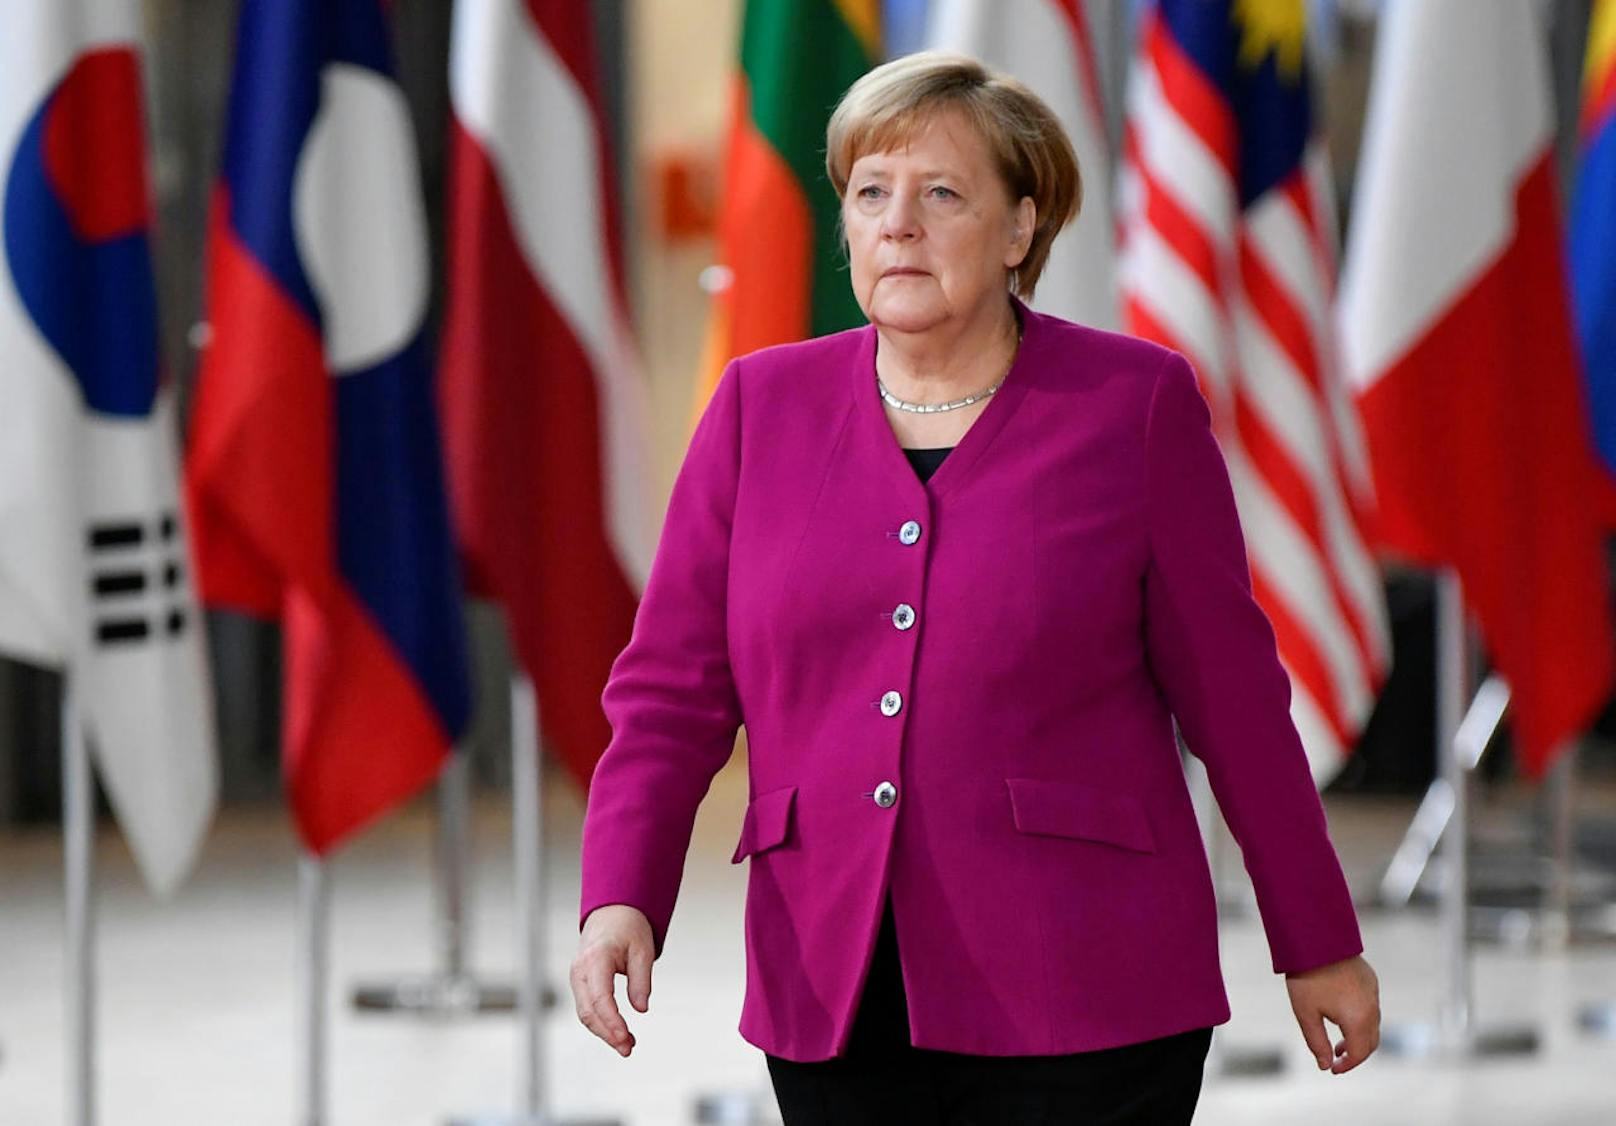 <b>Platz 12: Deutschland</b>
Die deutsche Kanzlerin Angela Merkel verdient ebenfalls das Siebenfache eines deutschen Durchschnittsgehalts: 333.500 Euro jährlich im Vergleich zu 44.800 Euro jährlich.